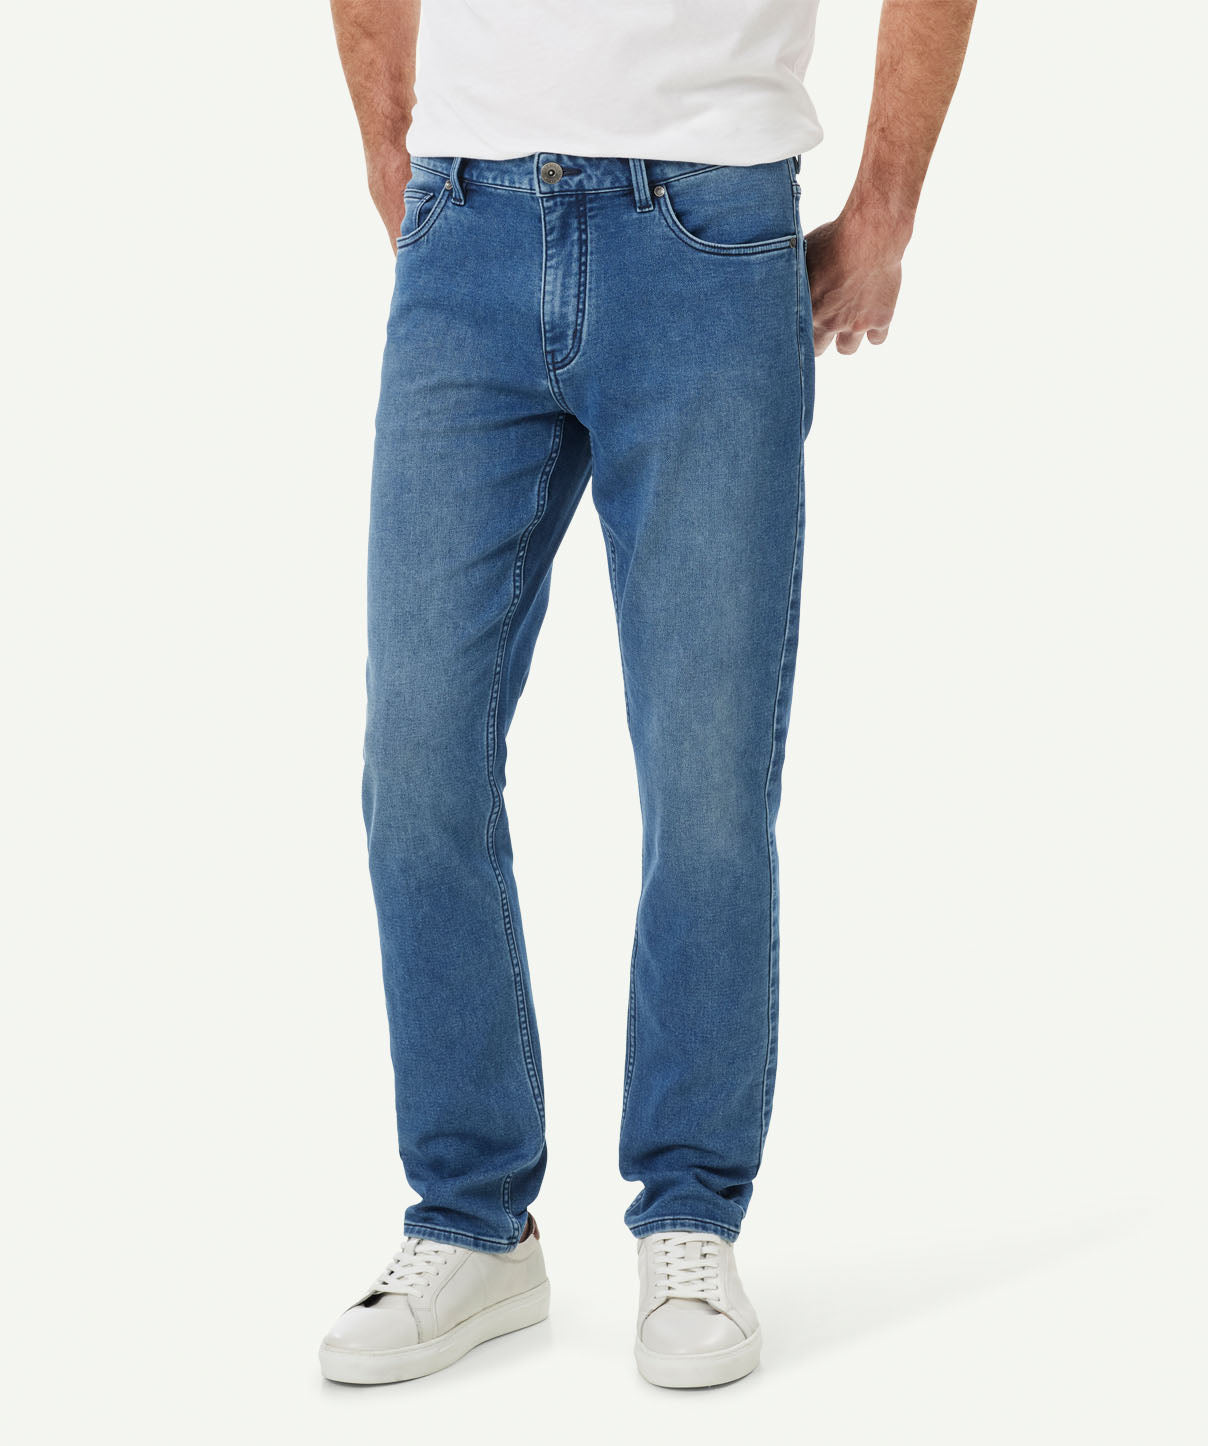 Merricks Knit Modern Fit Jeans - Washed Indigo - Jeans - GAZMAN